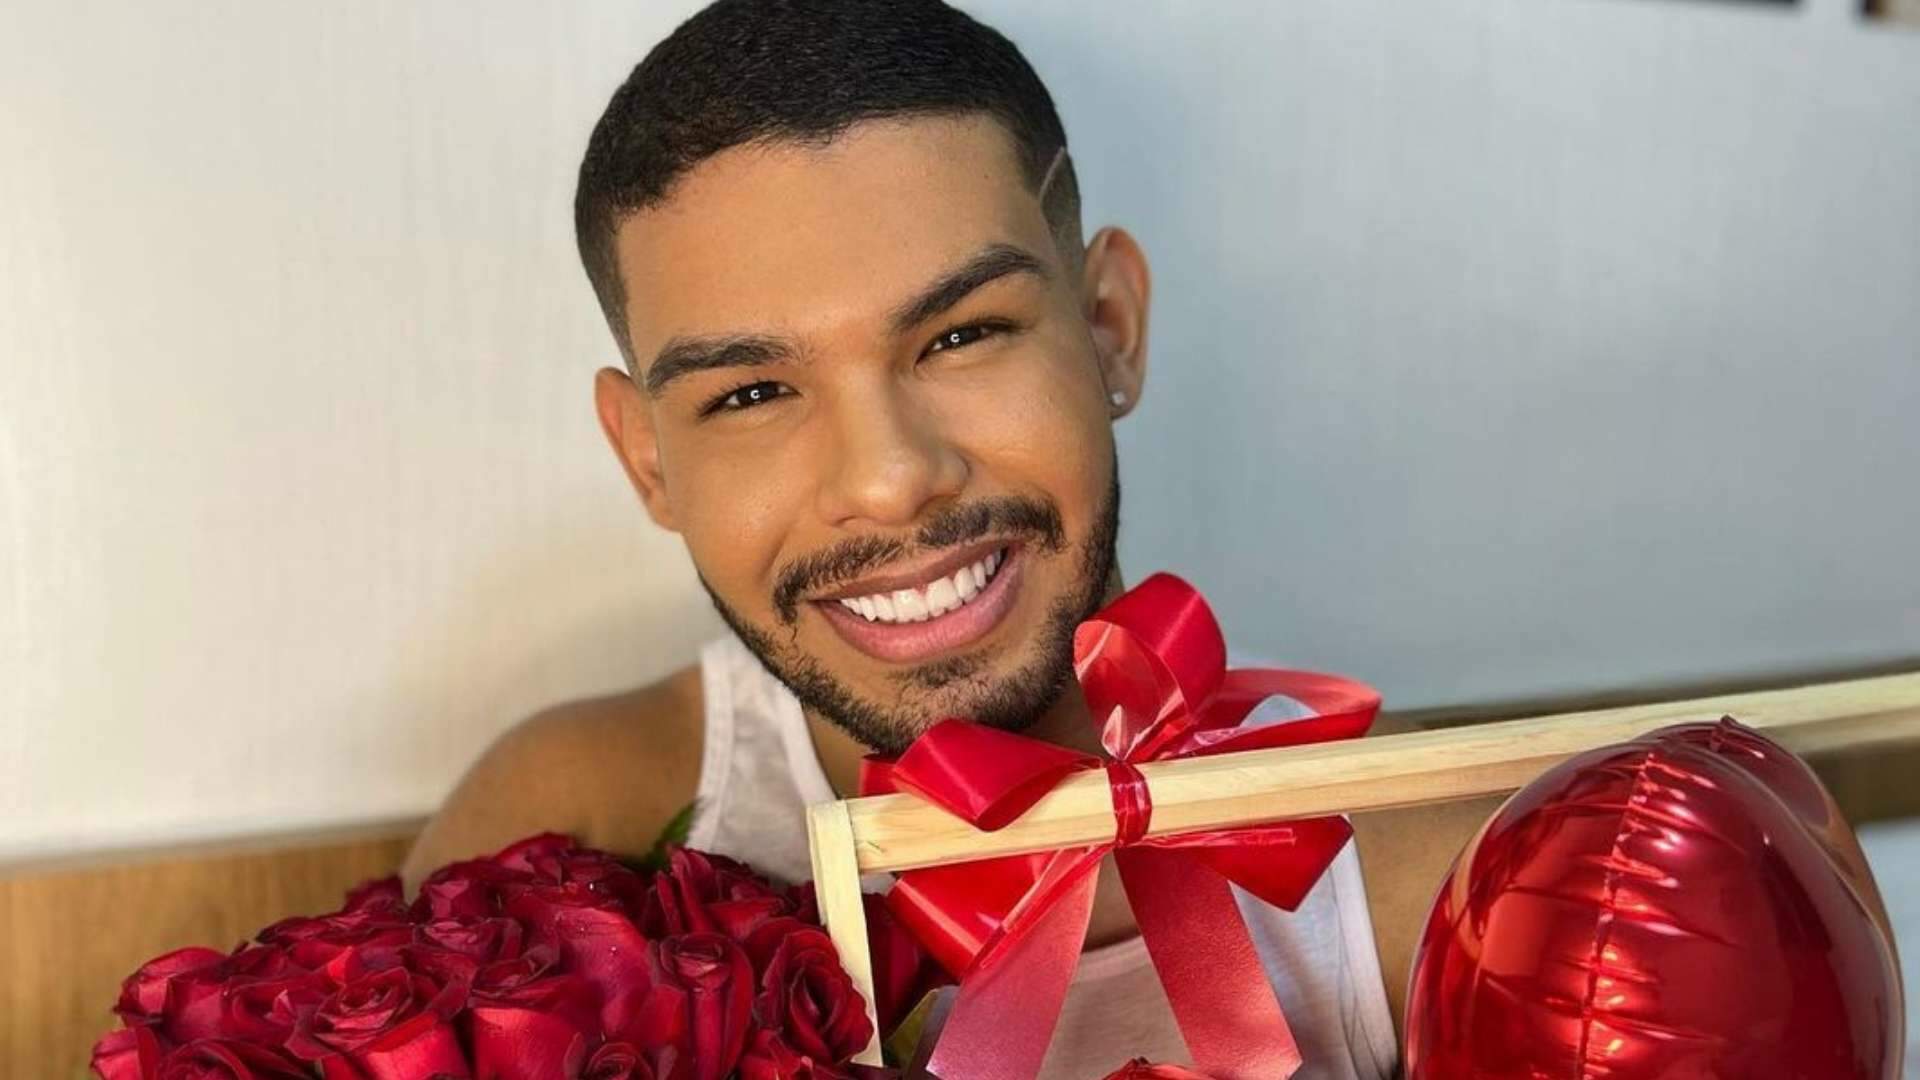 Namorando? Ex-BBB Vyni recebe flores e deixa fãs curiosos: “Primeira vez na vida” - Metropolitana FM